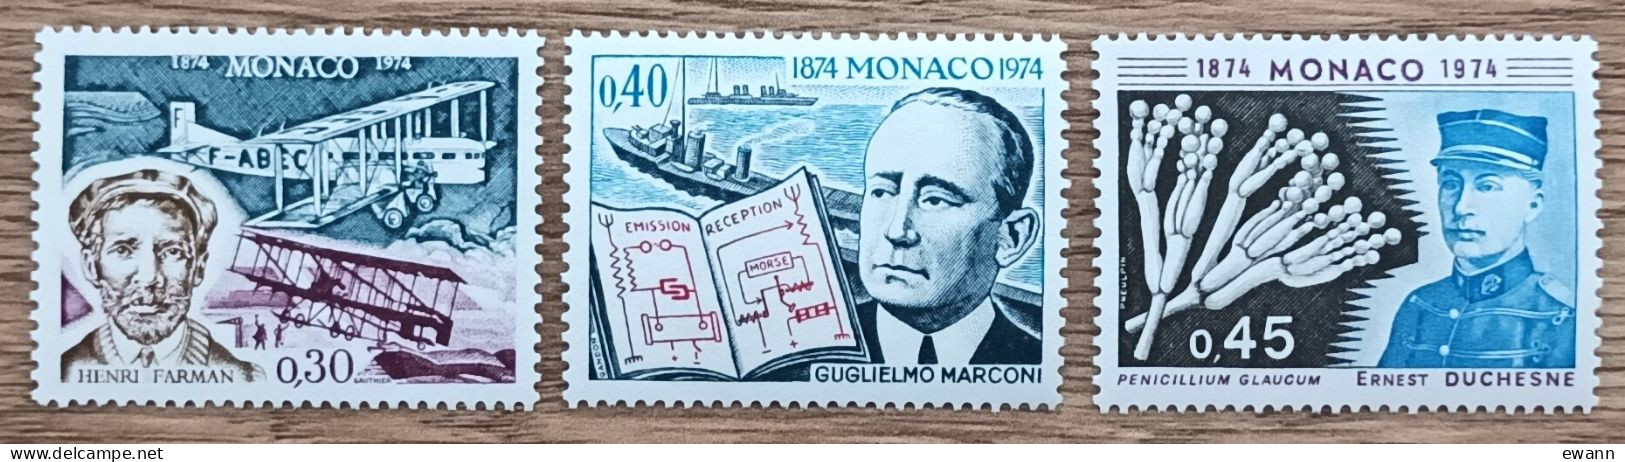 Monaco - YT N°959 à 961 - Henri Farman / Guglielmo Marconi / Ernest Duchesne - 1974 - Neuf - Neufs